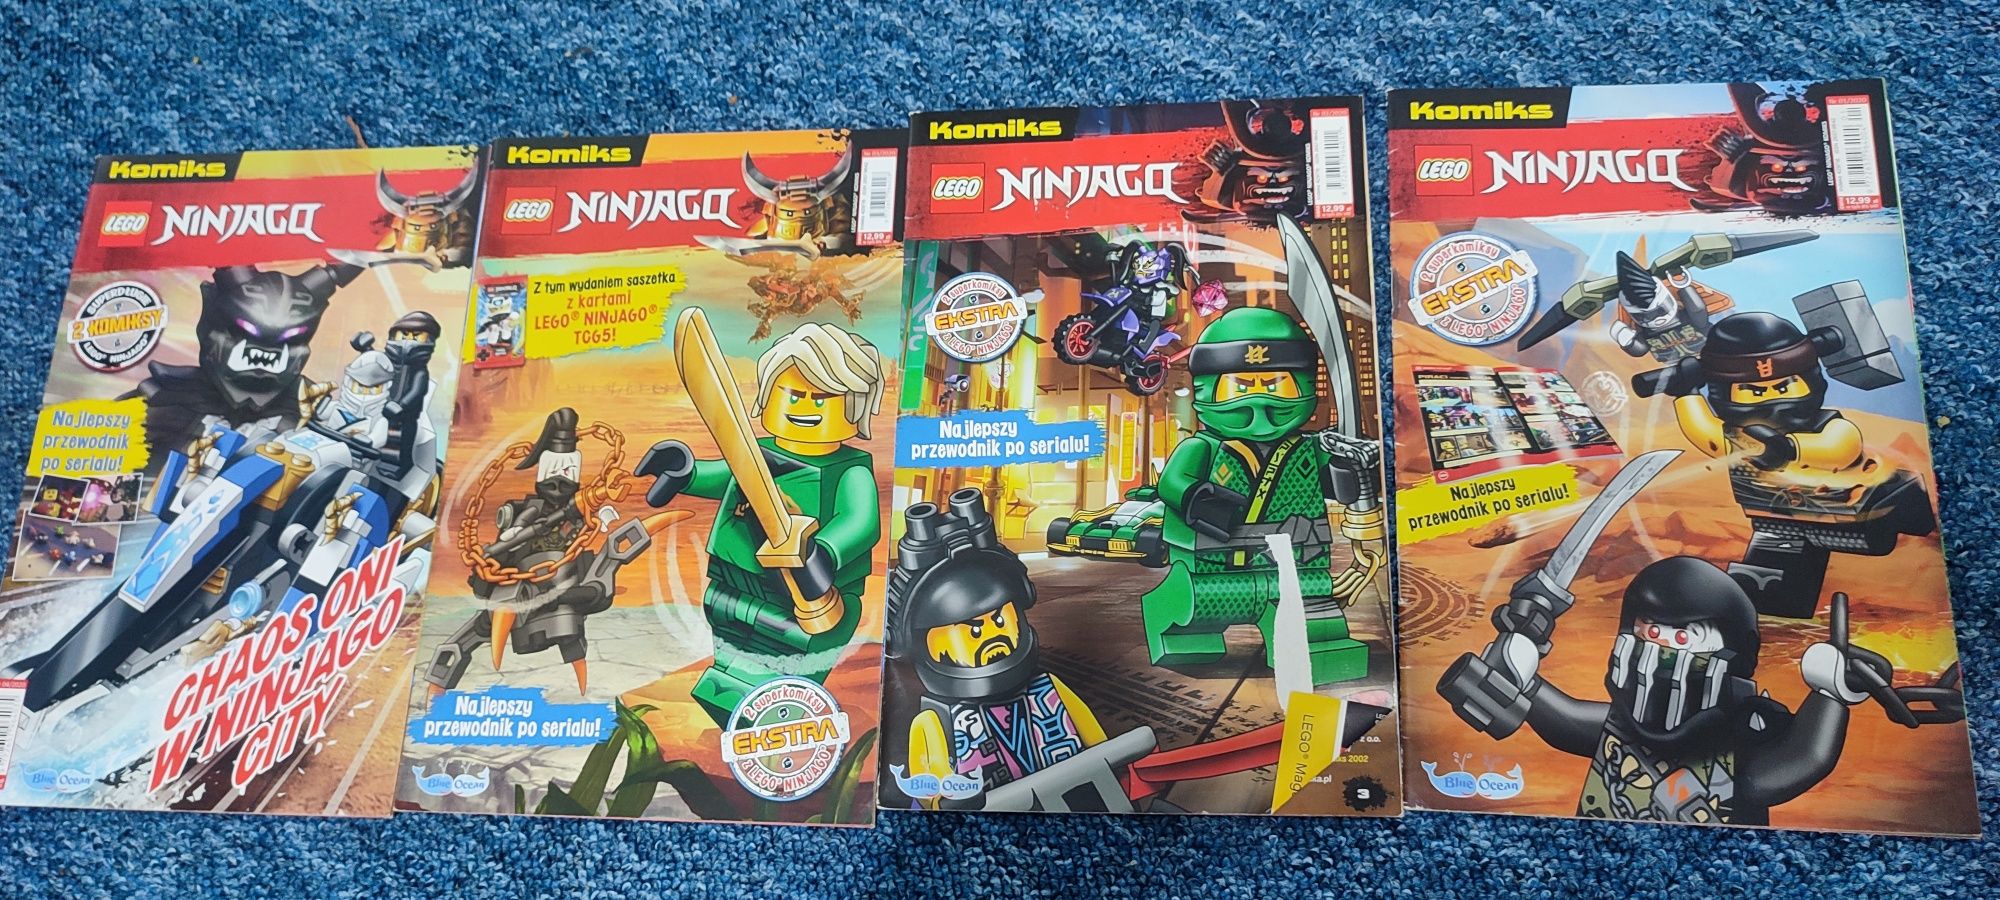 Gazety gazeta komiksy LEGO ninjago 2020 r.